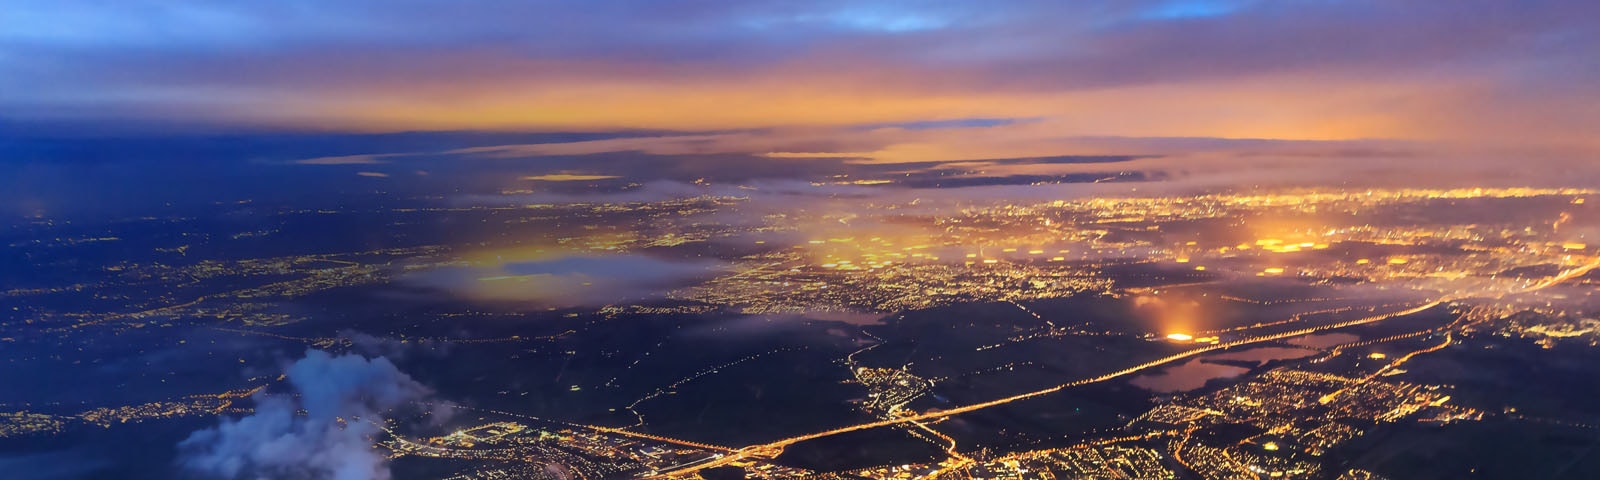 Vue aérienne d'une ville la nuit